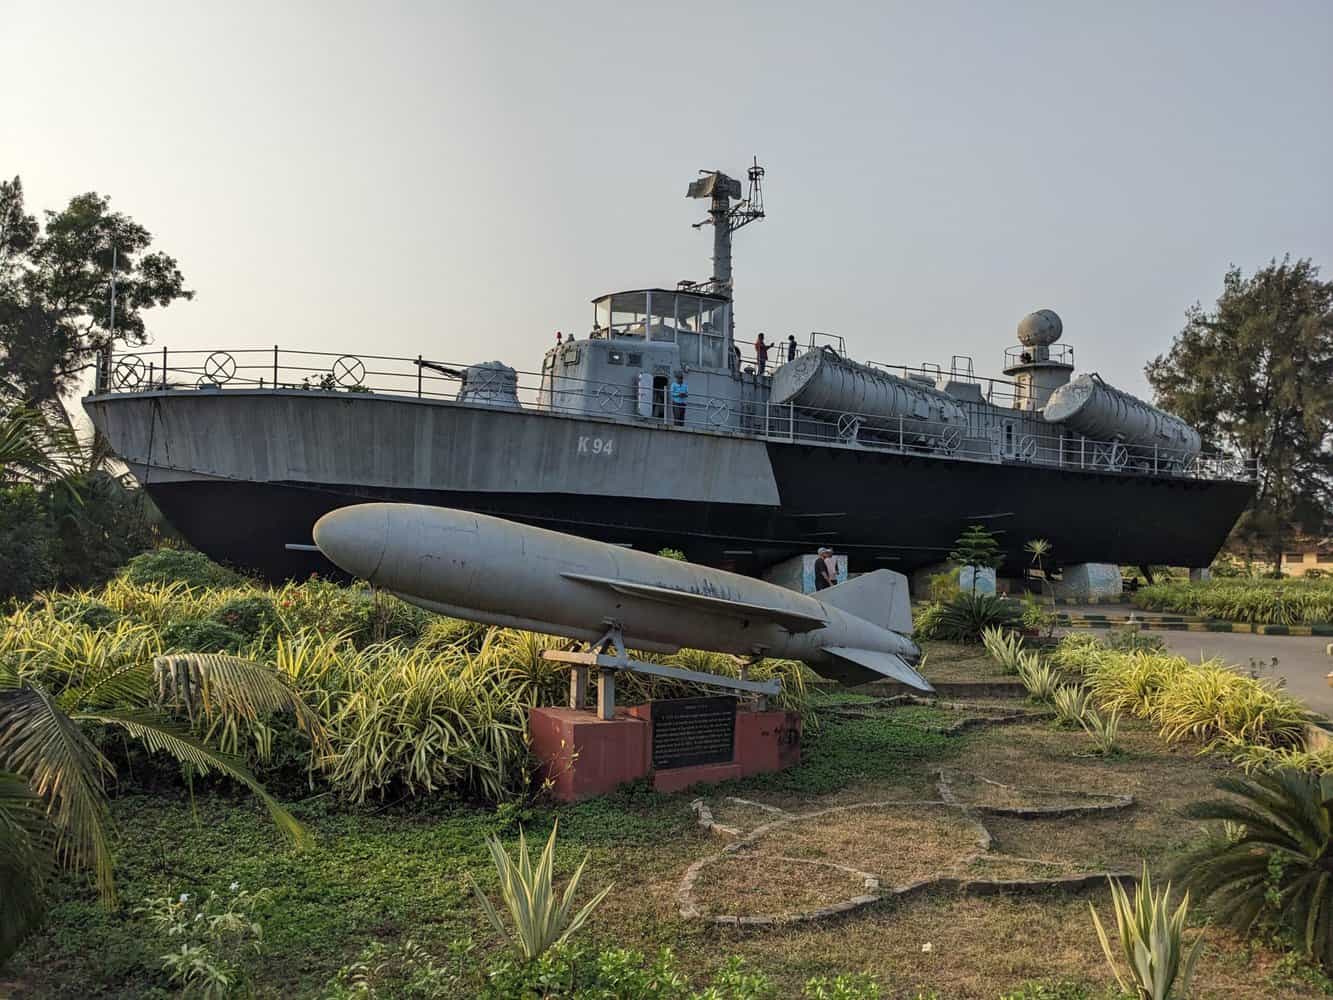 Karwar warship museum, Karnataka